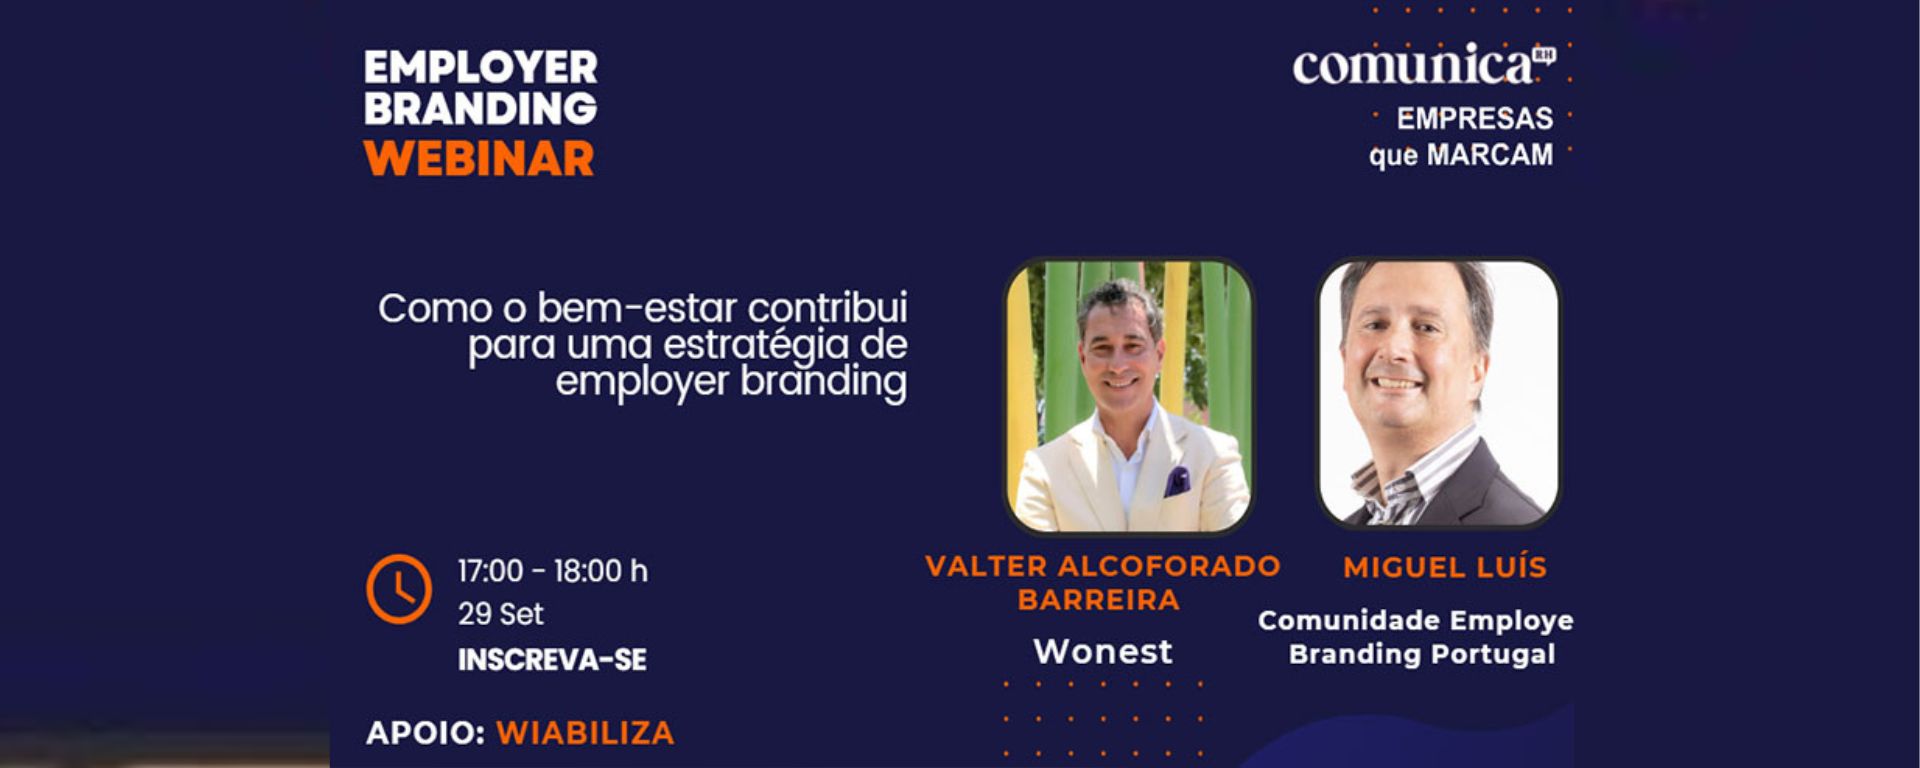 Webinar de Employer Branding com Valter Alcoforado Barreira 